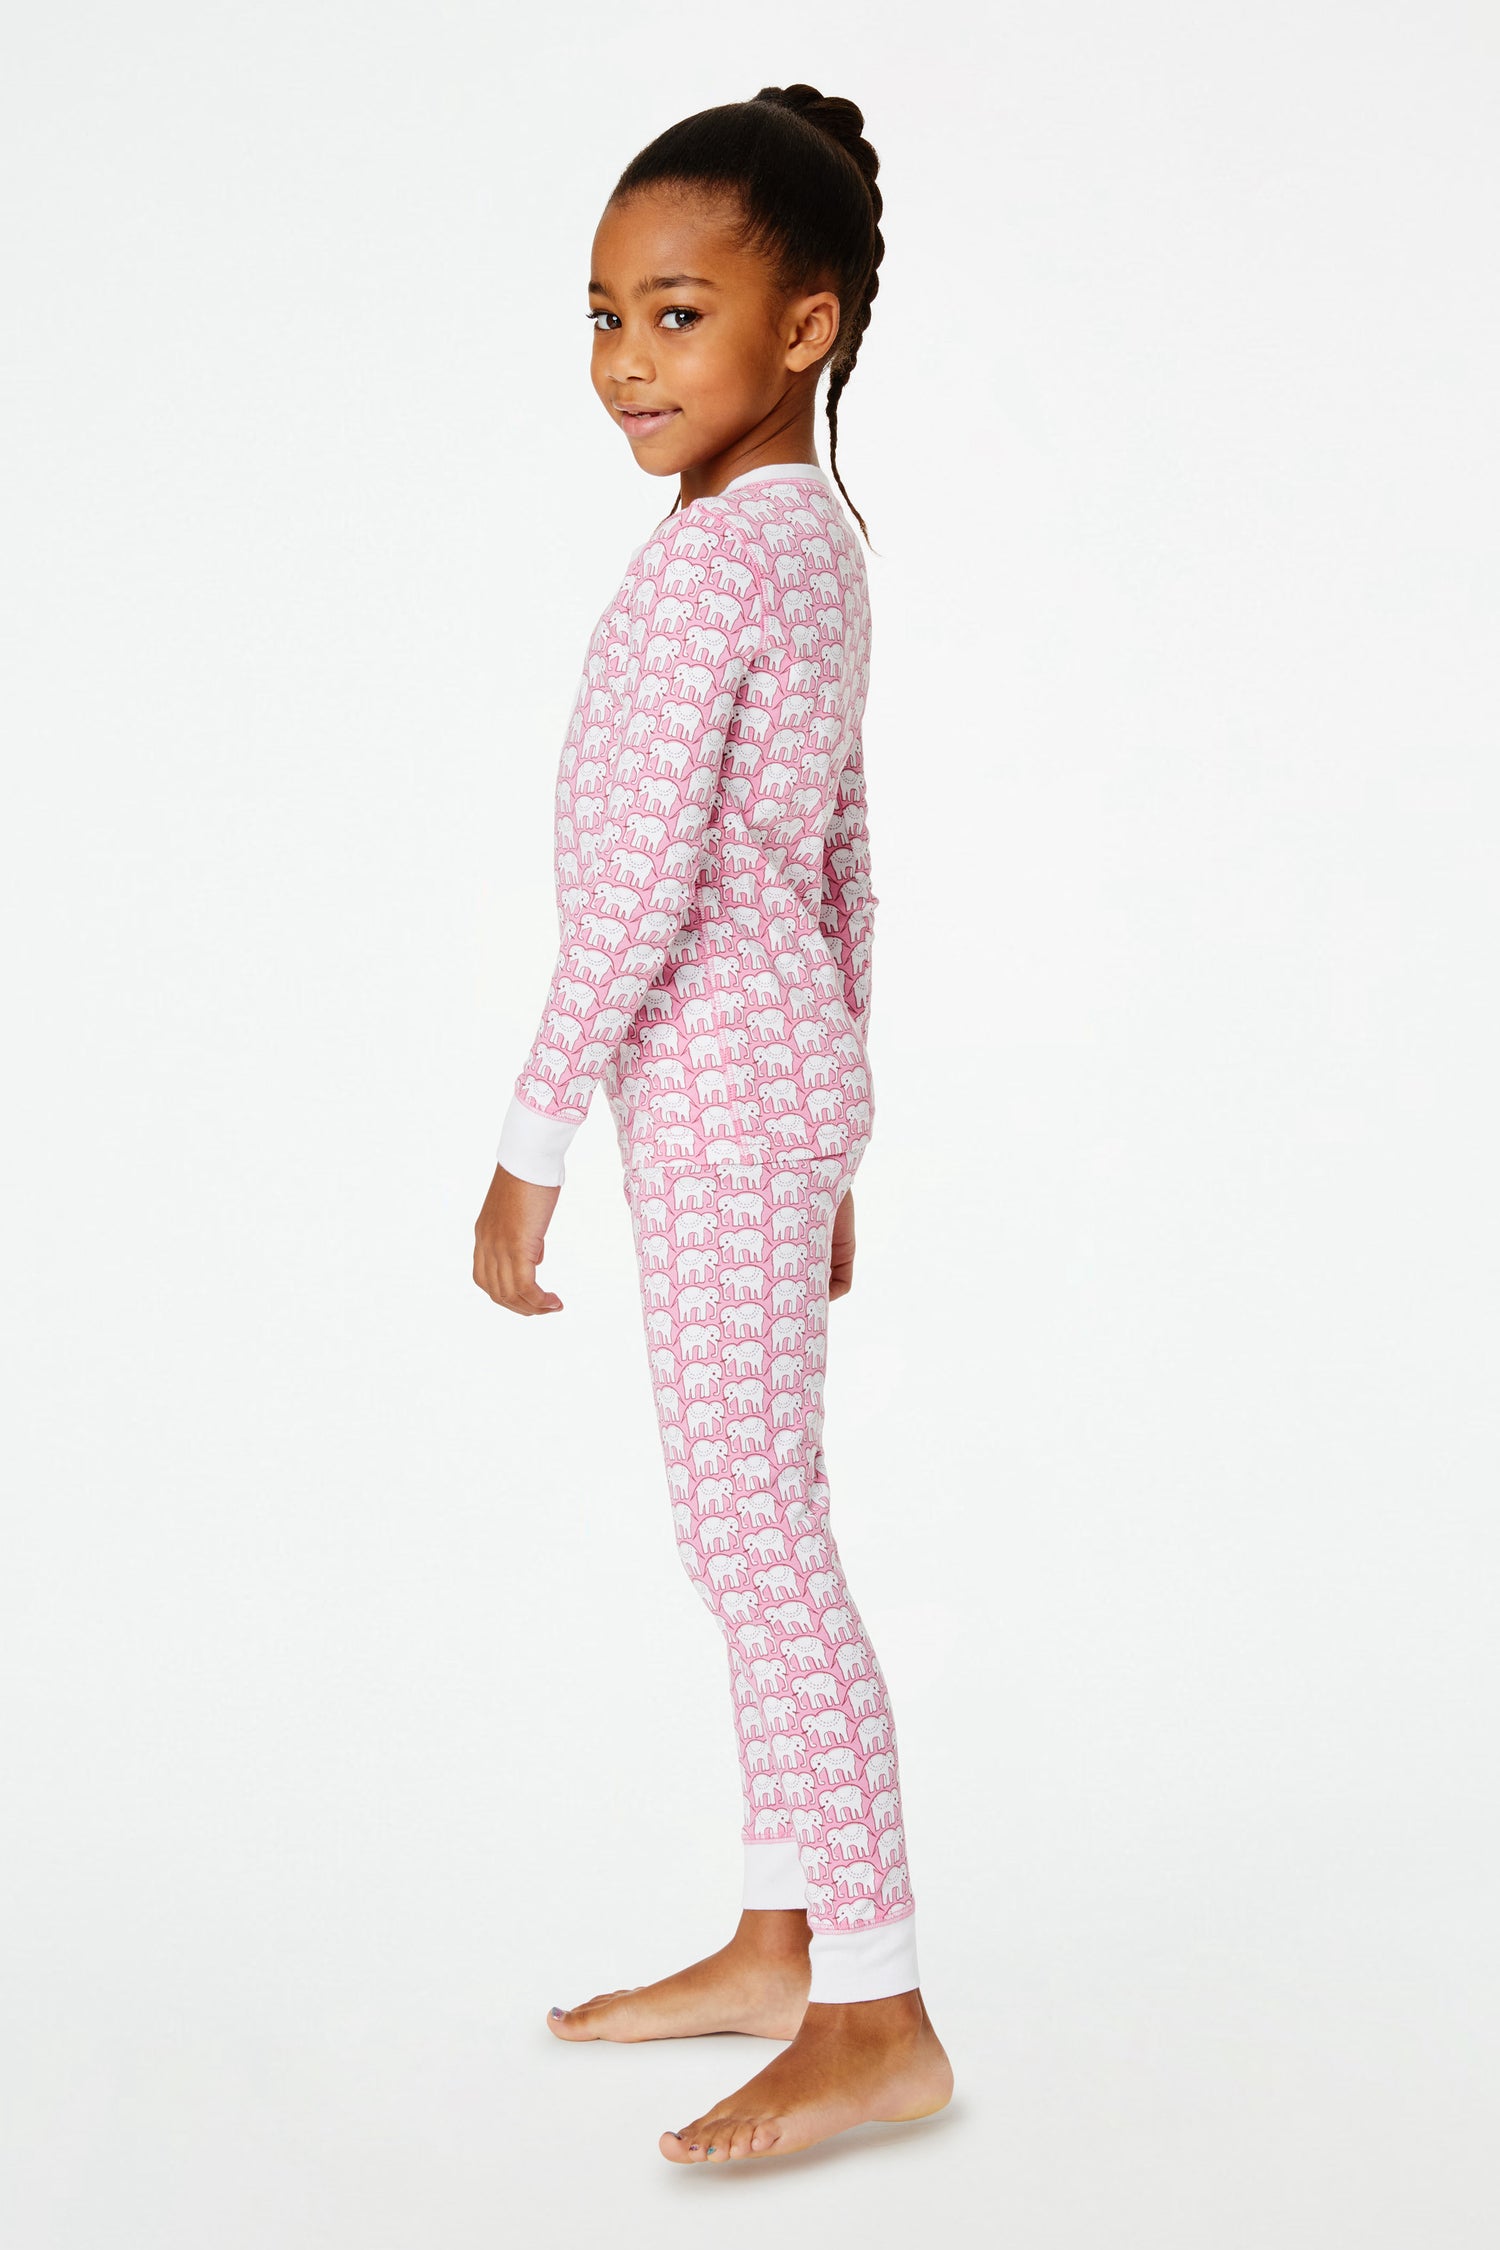 Roller Rabbit Pink Kids Hathi Pajamas